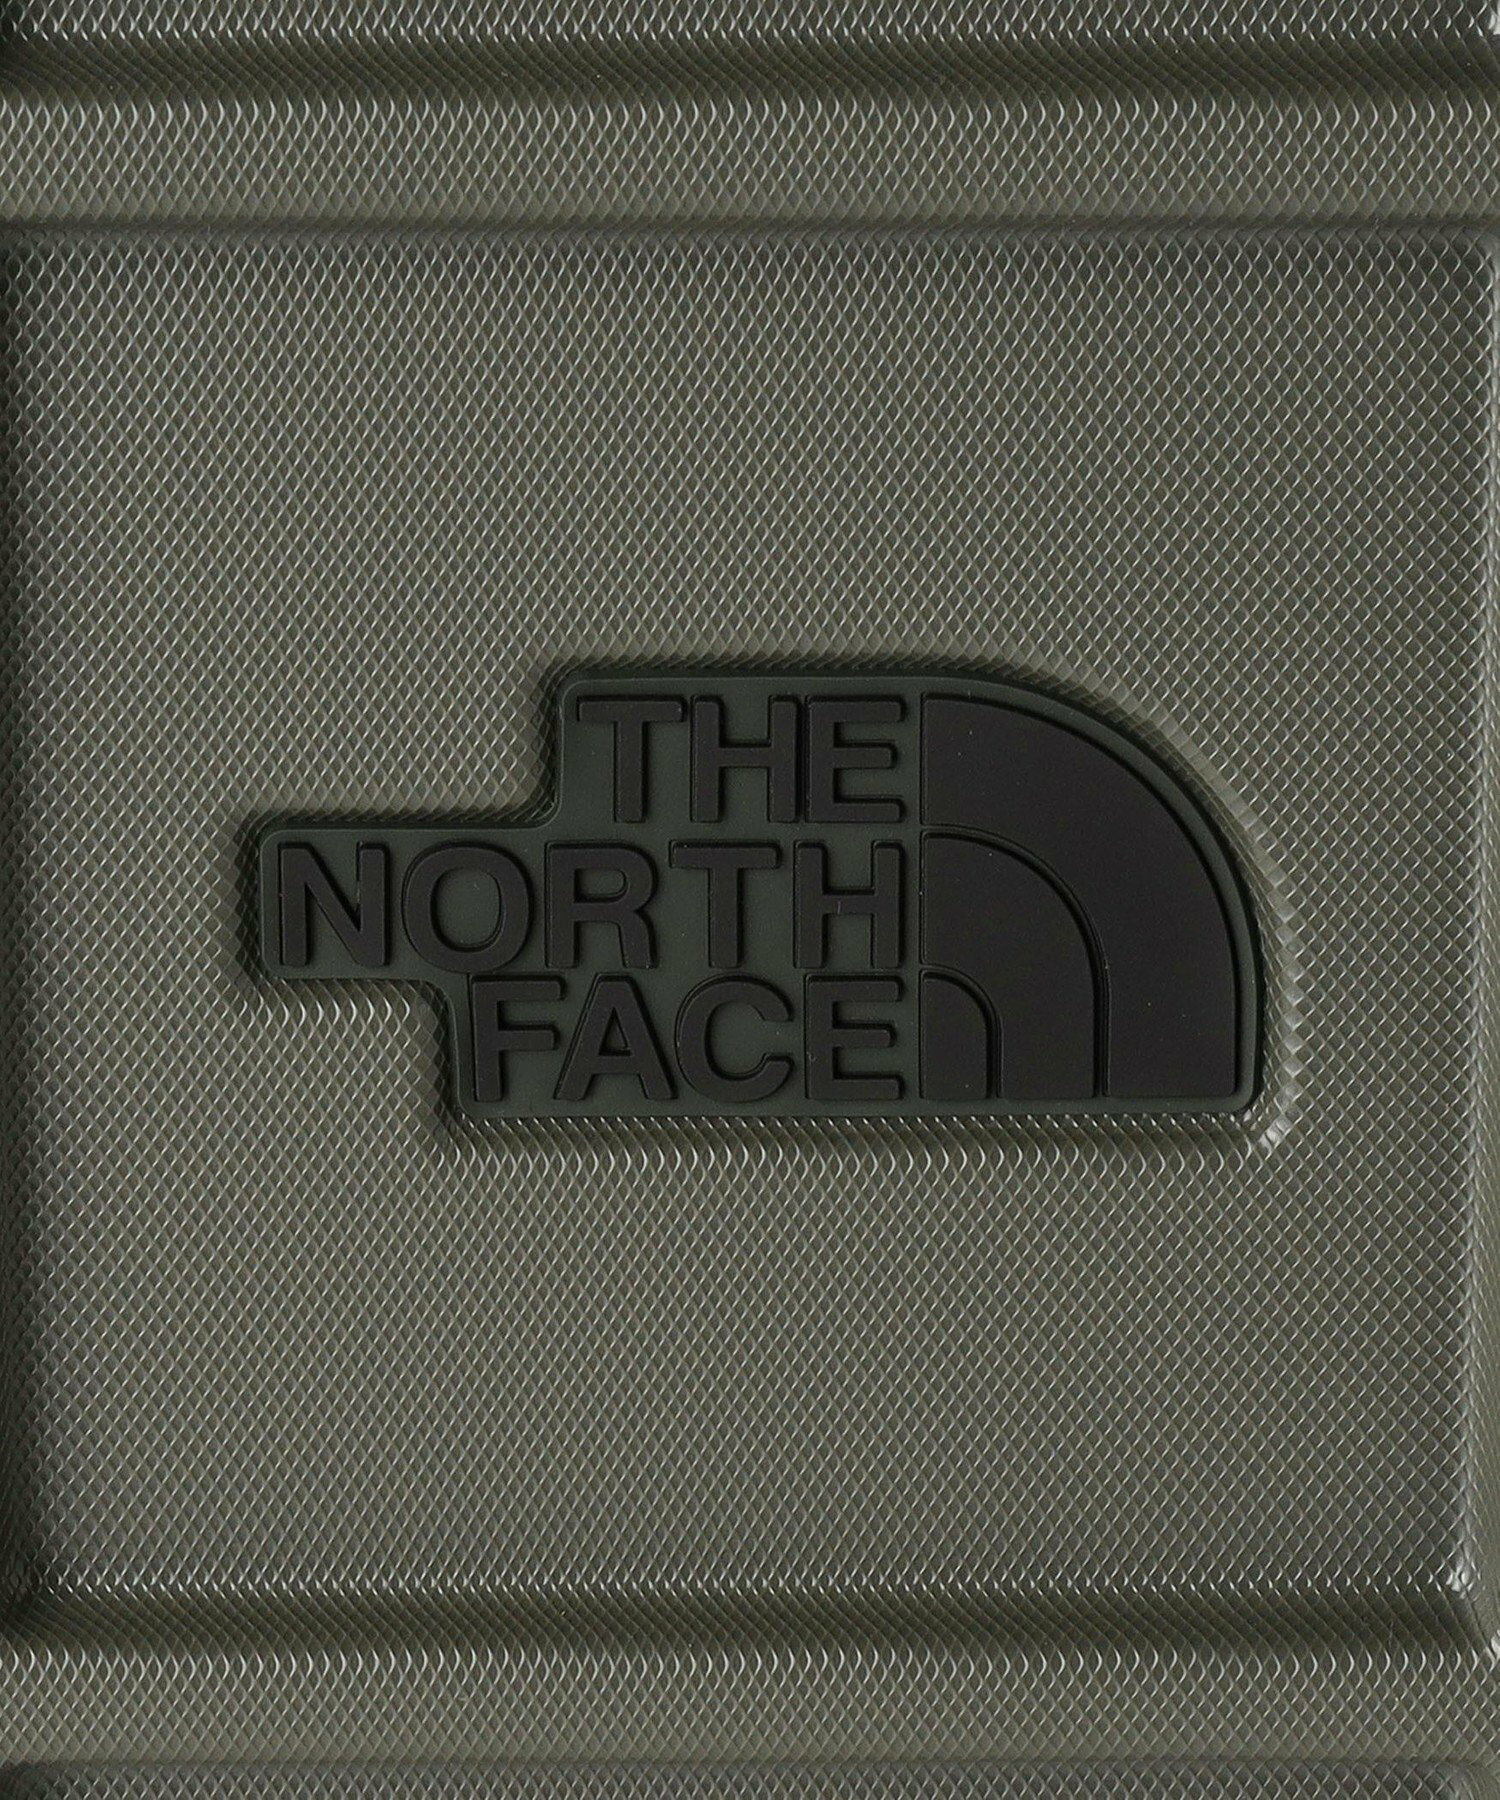 <THE NORTH FACE>オールウェザー4ウィーラー30インチ / 70L